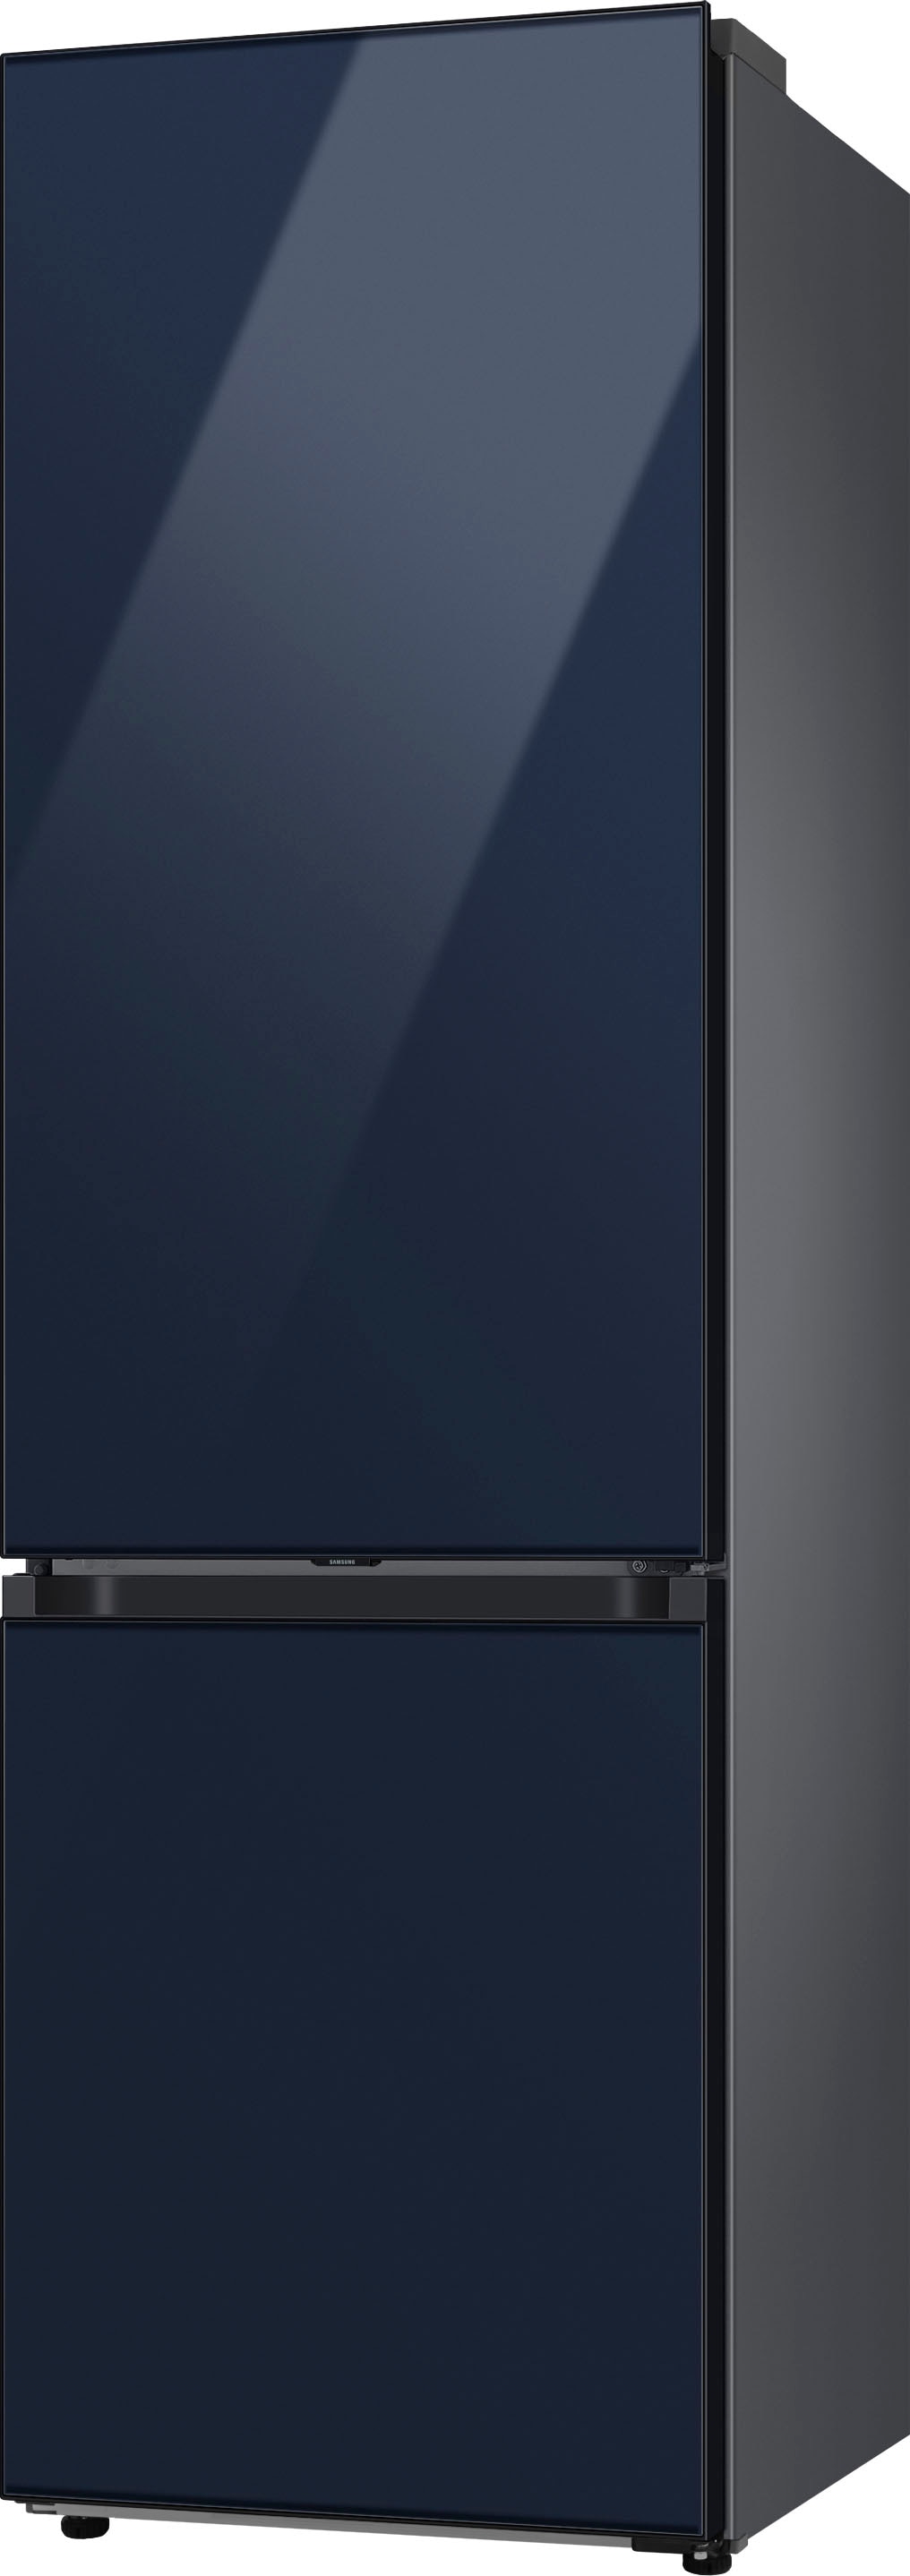 Samsung Kühl-/Gefrierkombination »RL38C6B6C41«, RL38C6B6C41, 203 cm hoch, 59 ,5 cm breit kaufen